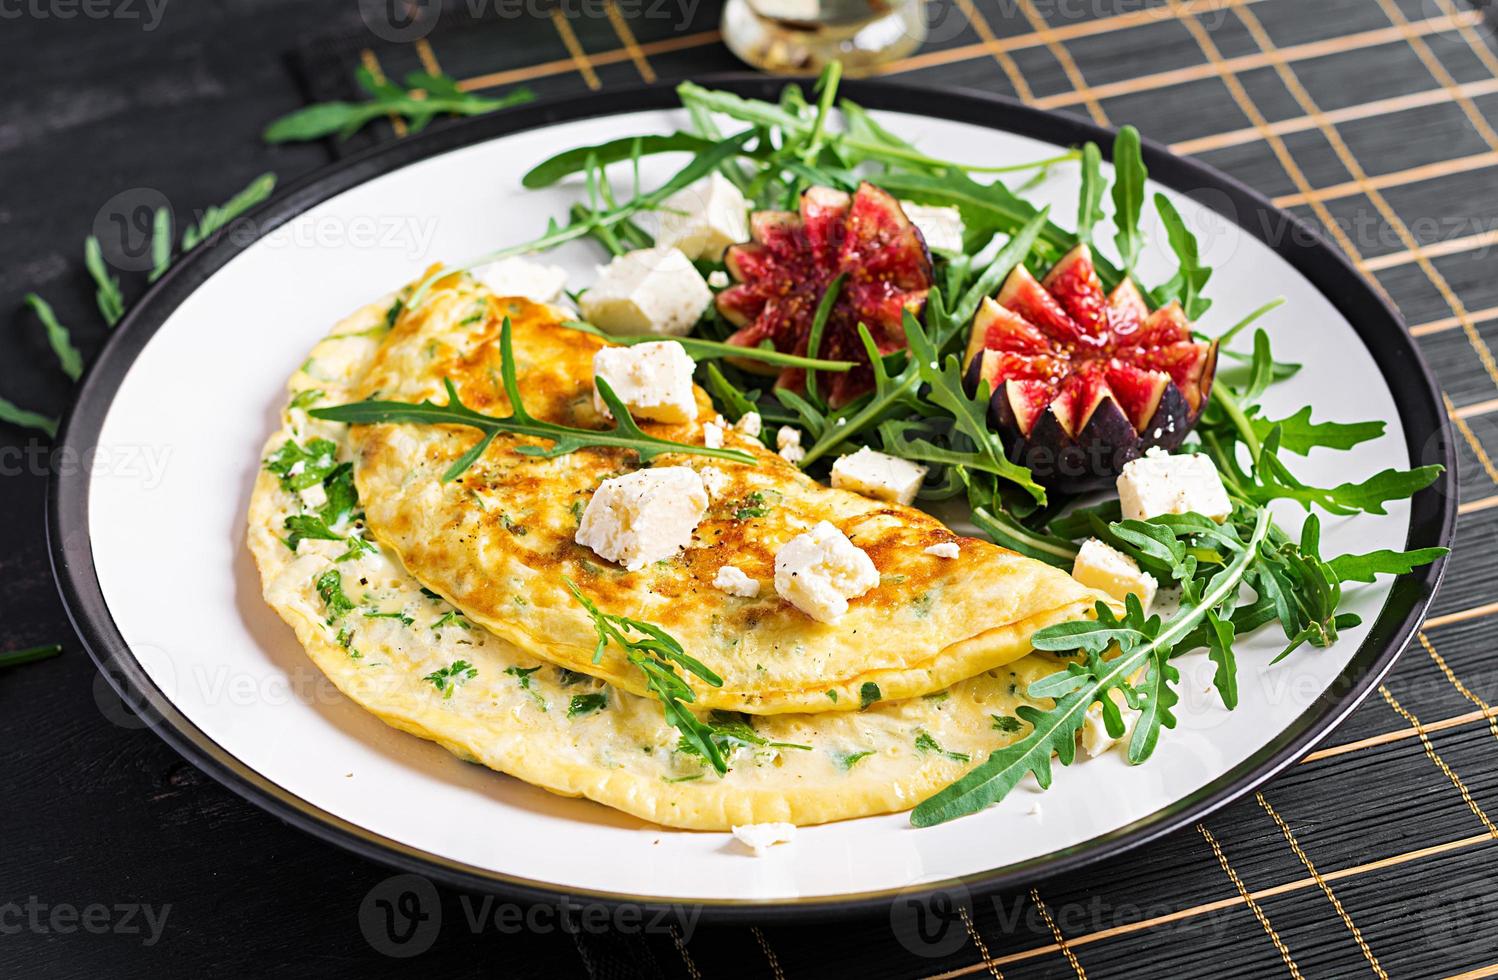 omelet met feta kaas, peterselie en salade met vijgen, rucola Aan wit bord. frittata - Italiaans omelet. foto